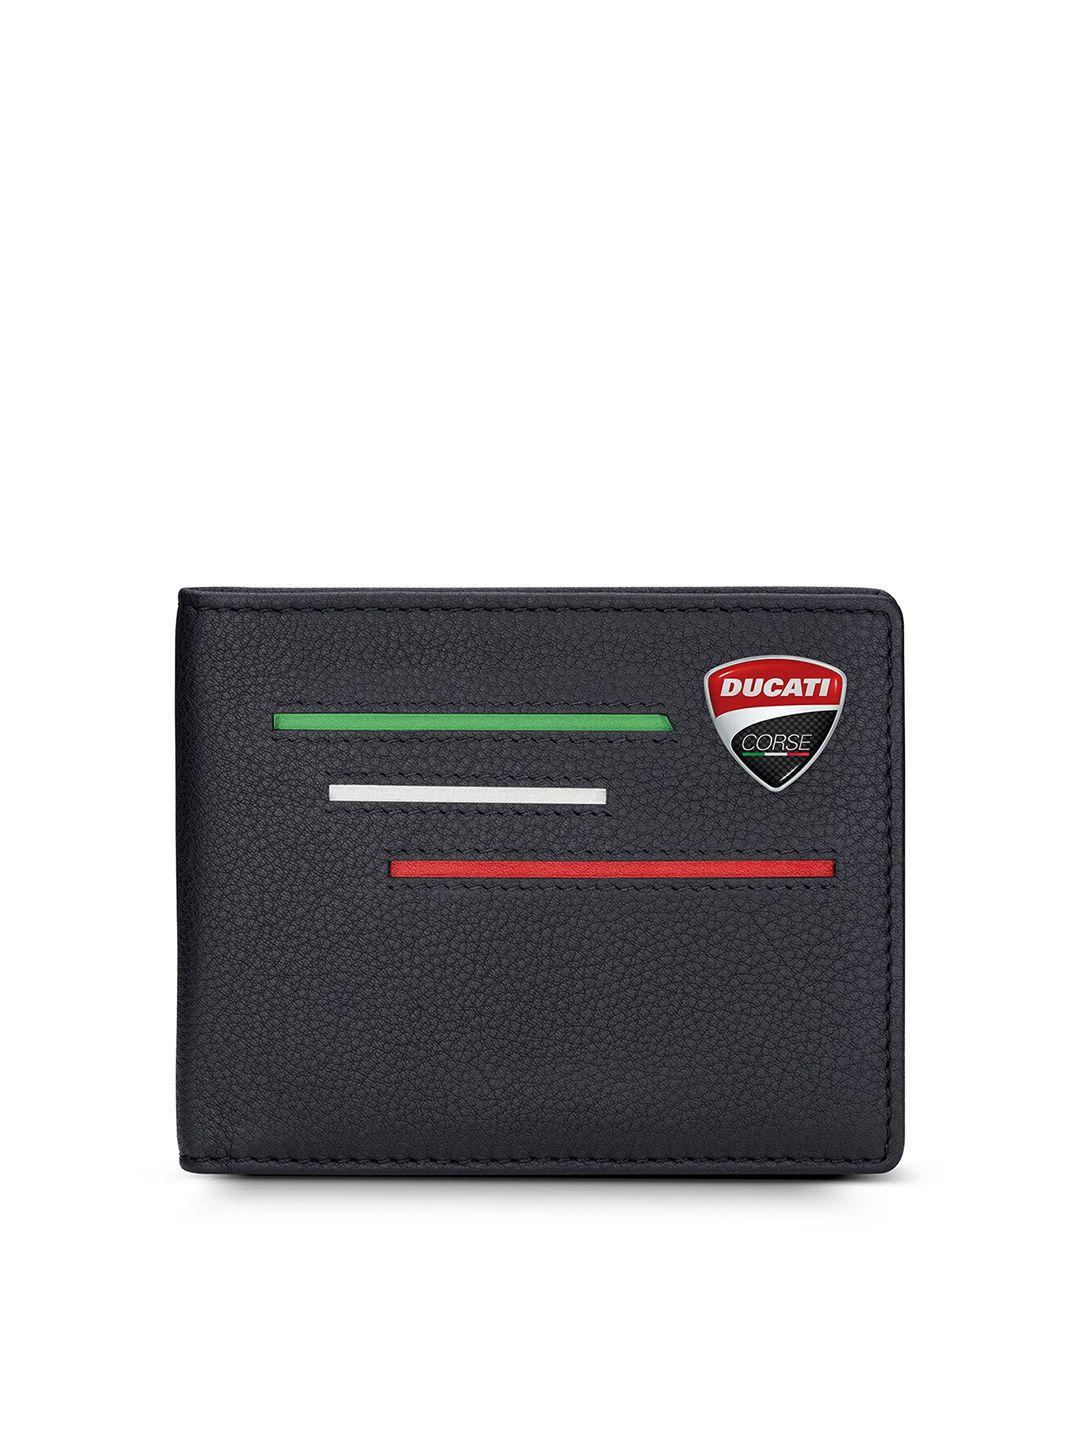 ducati corse men  leather two fold wallet